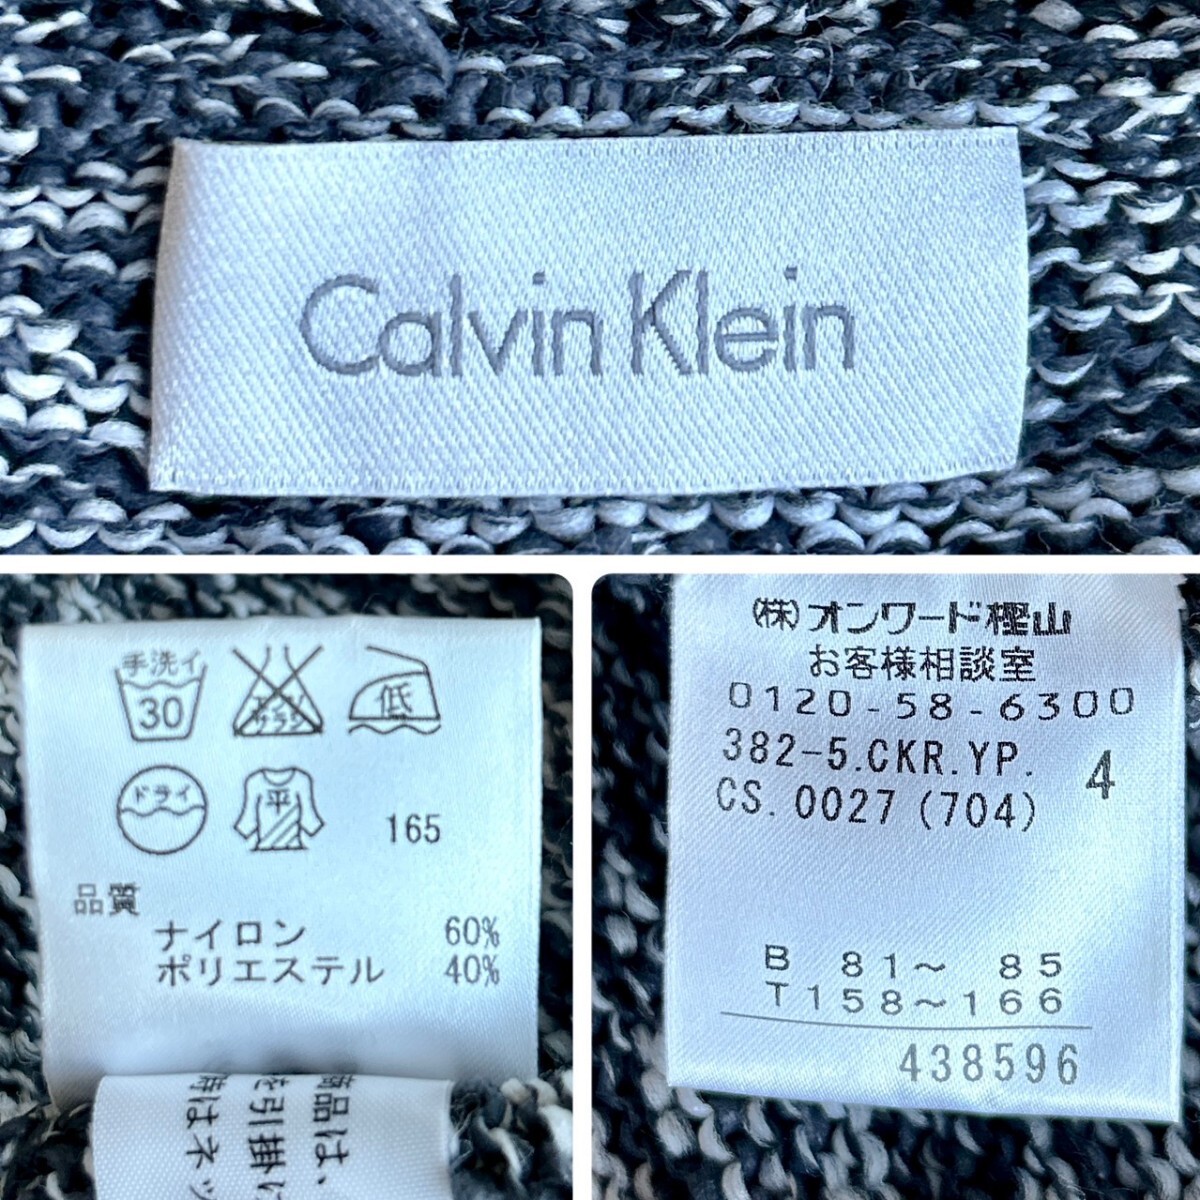 【大人の色気】Calvin Klein カルバンクライン 霜降りネイビー ショールカラー ローゲージニット カーディガン Mサイズ相当 ストレッチ素材の画像8